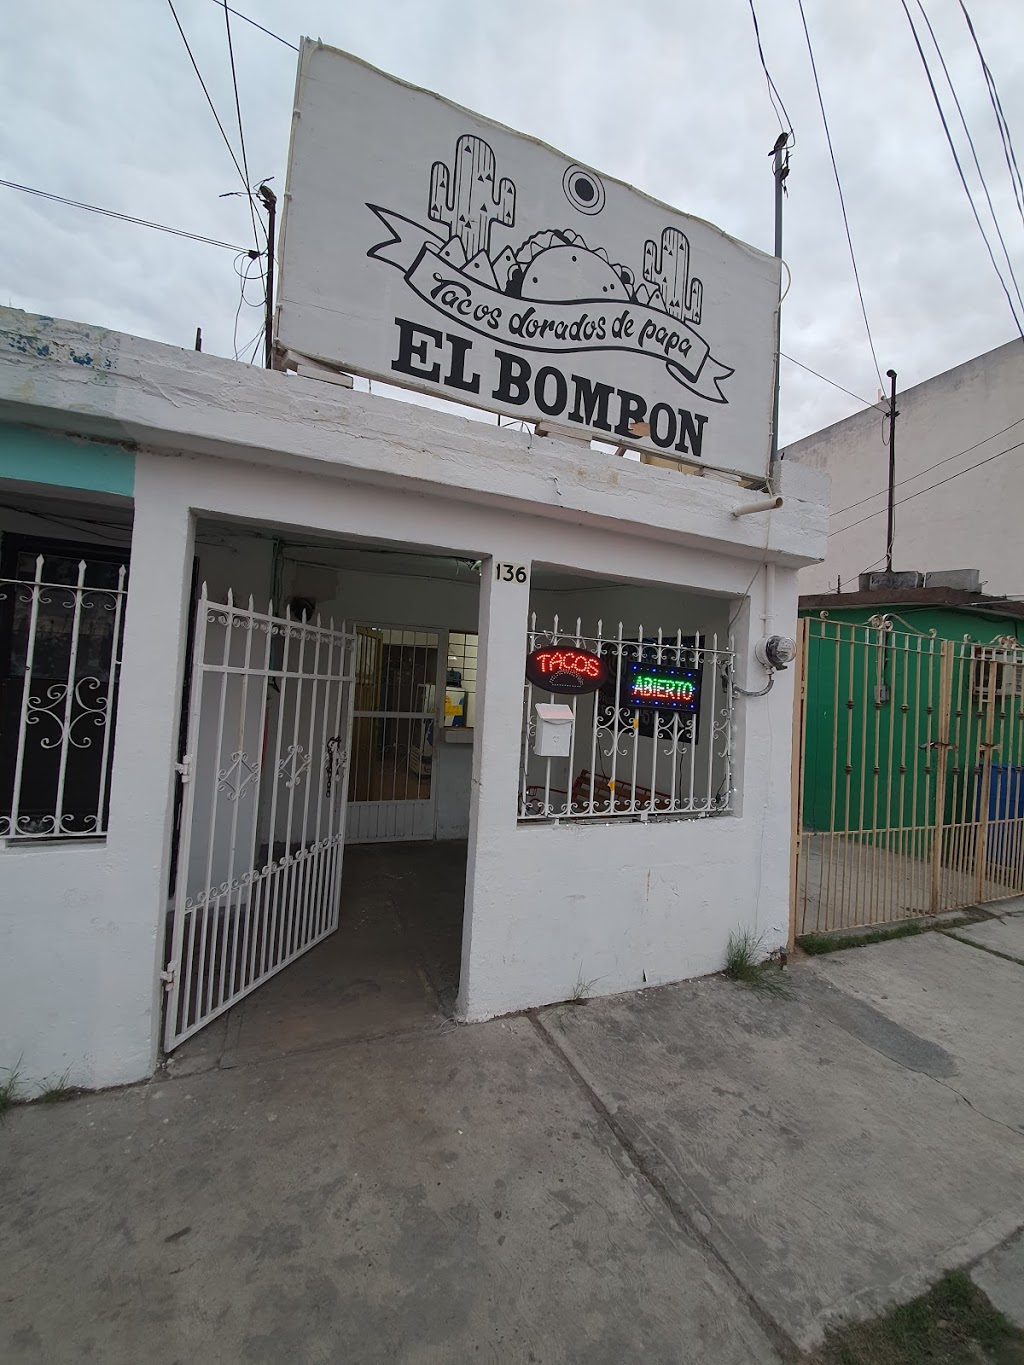 Tacos dorados de papa "EL BOMBON" | Francisco de Paula 136, Infonavit Fundadores, 88275 Nuevo Laredo, Tamps., Mexico | Phone: 867 169 0518